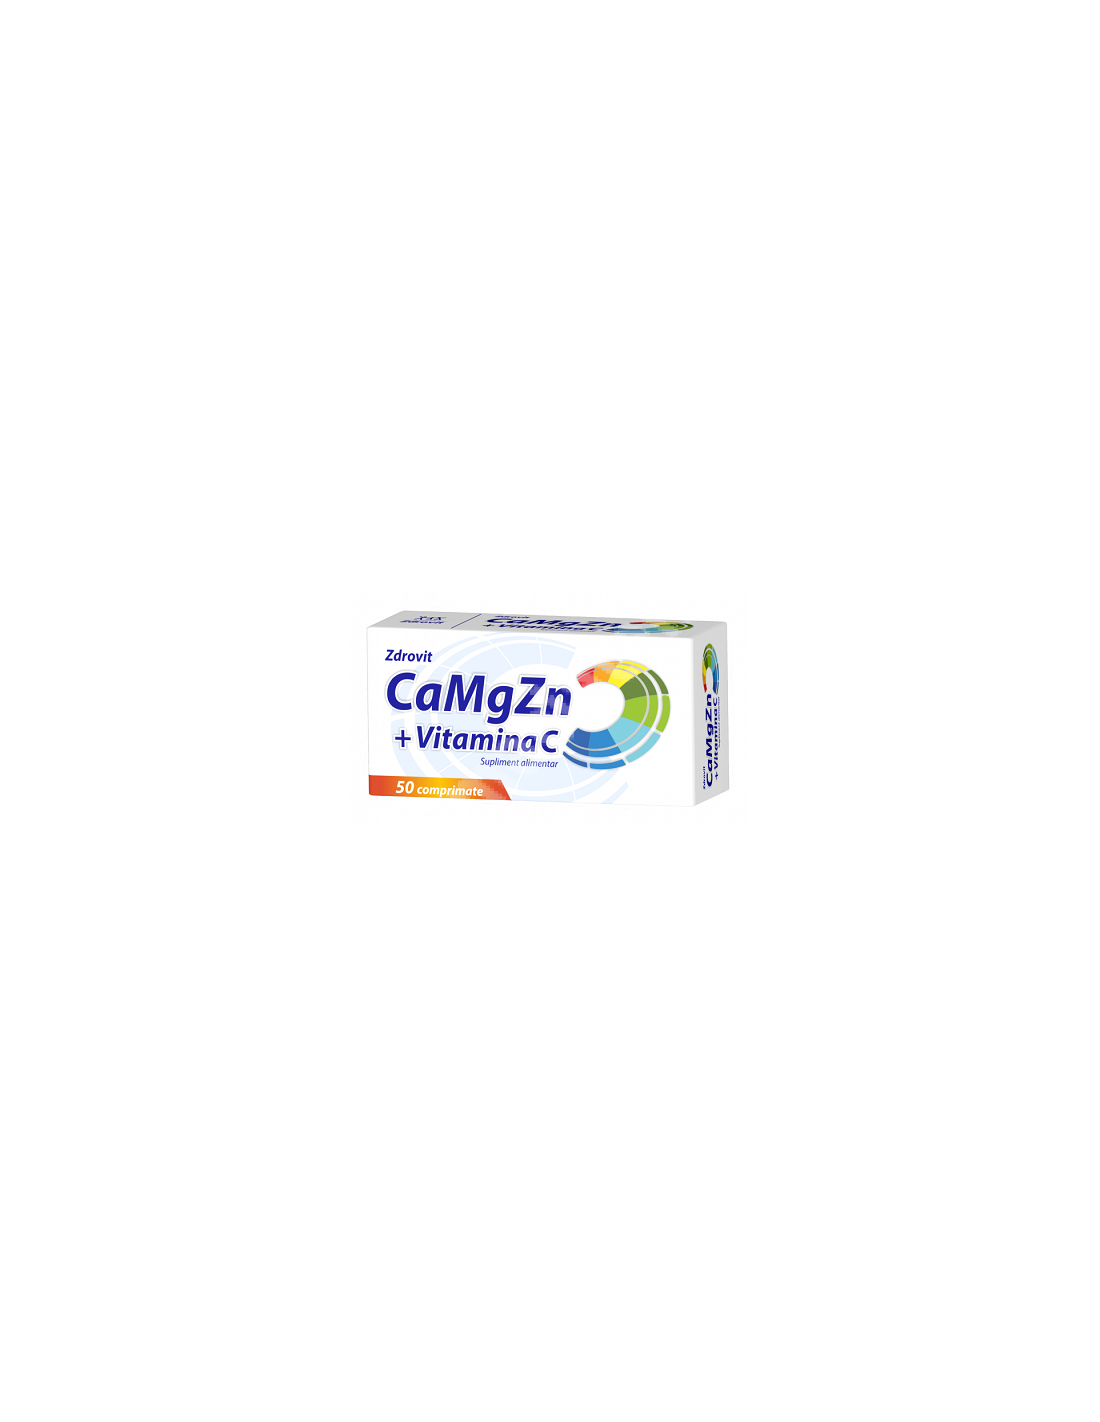 CaMgZn + Vitamina C, 50 comprimate, Zdrovit - UZ-GENERAL - ZDROVIT